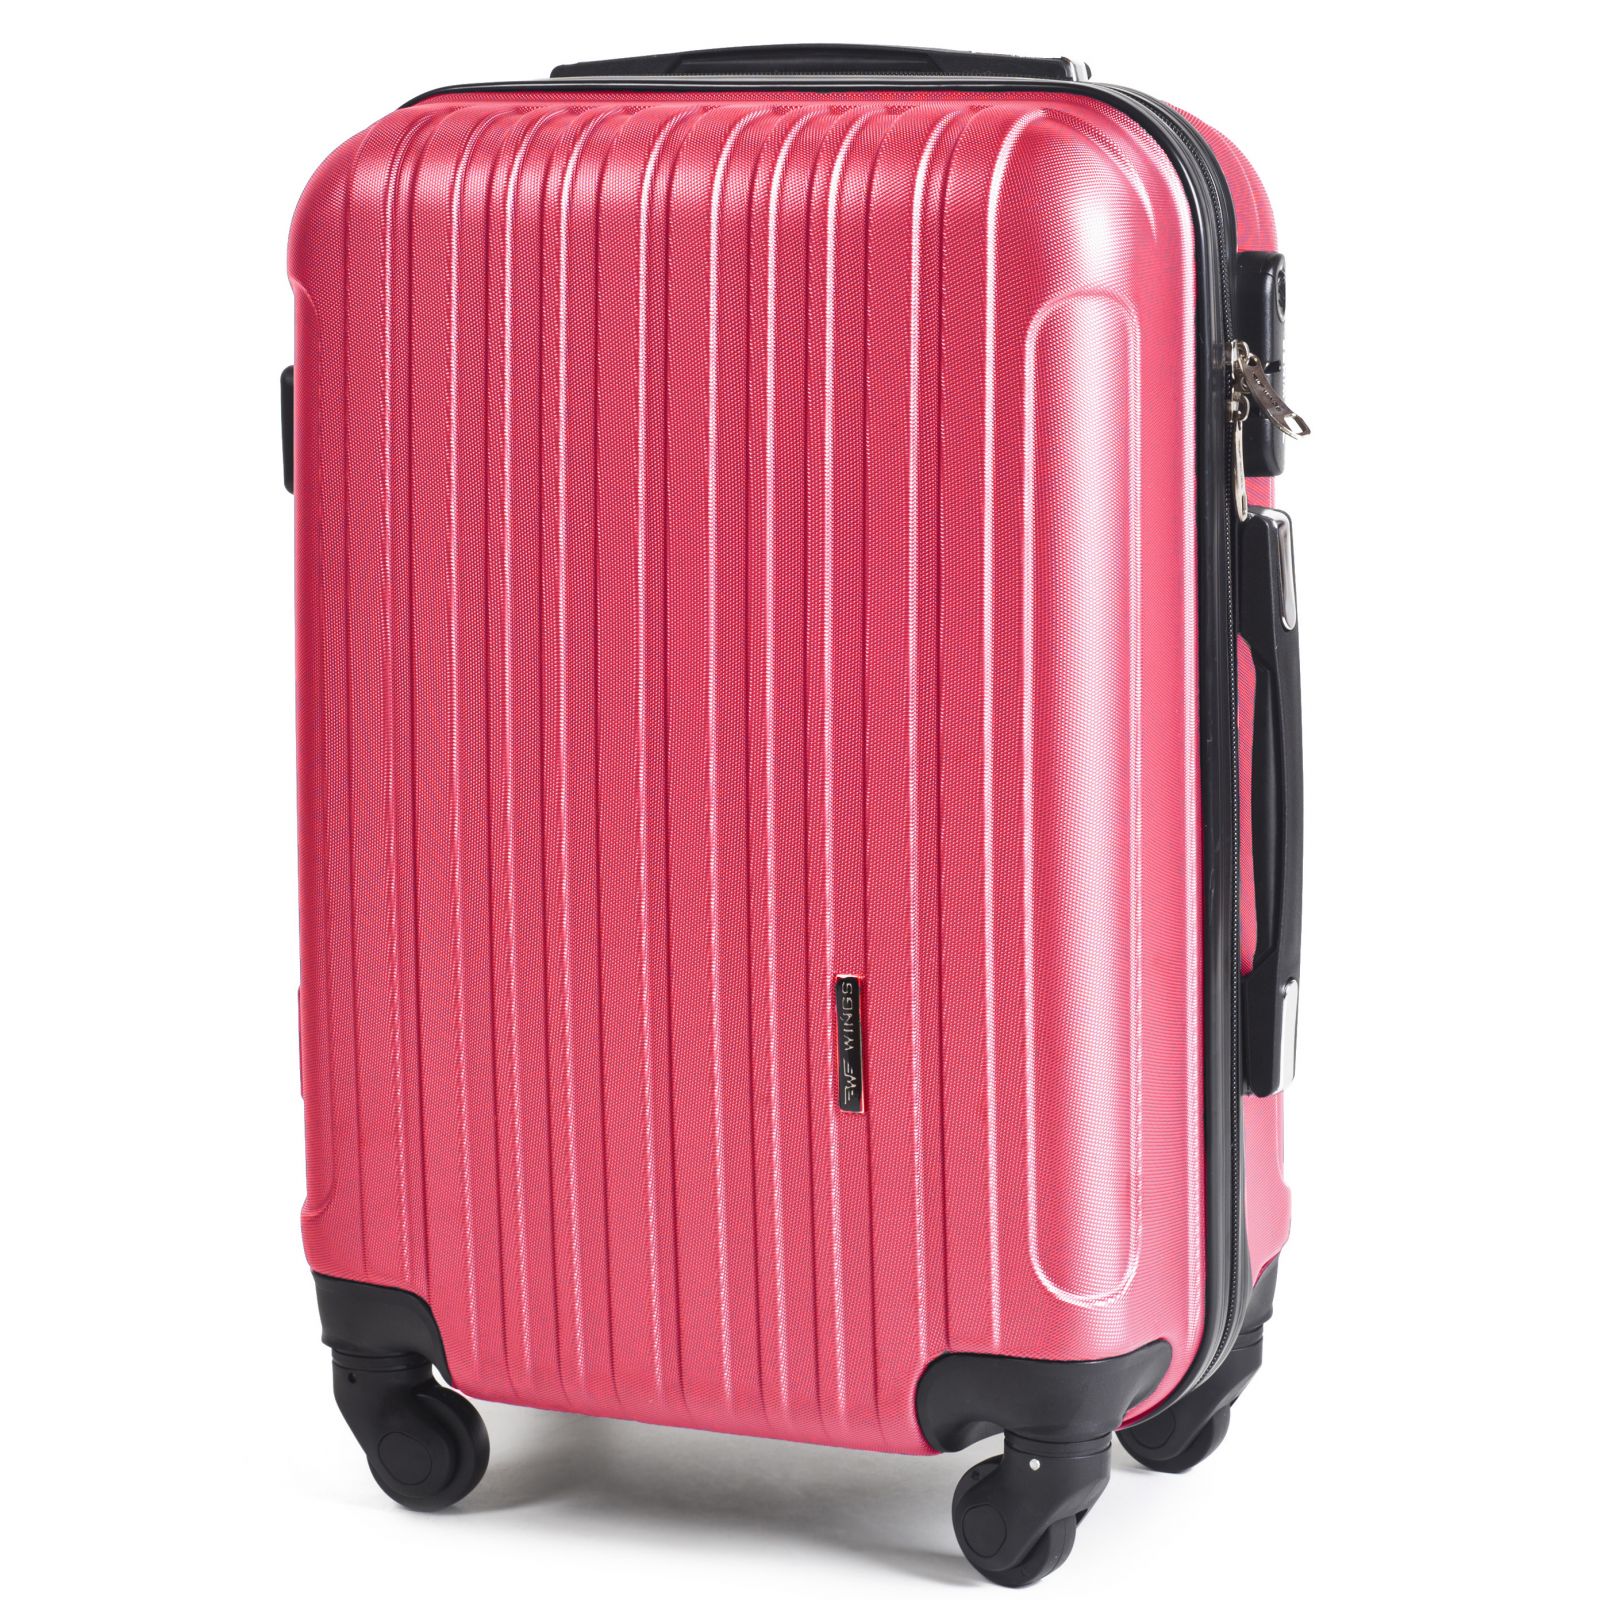 Cestovní kufr WINGS 2011 ABS ROSE RED malý S